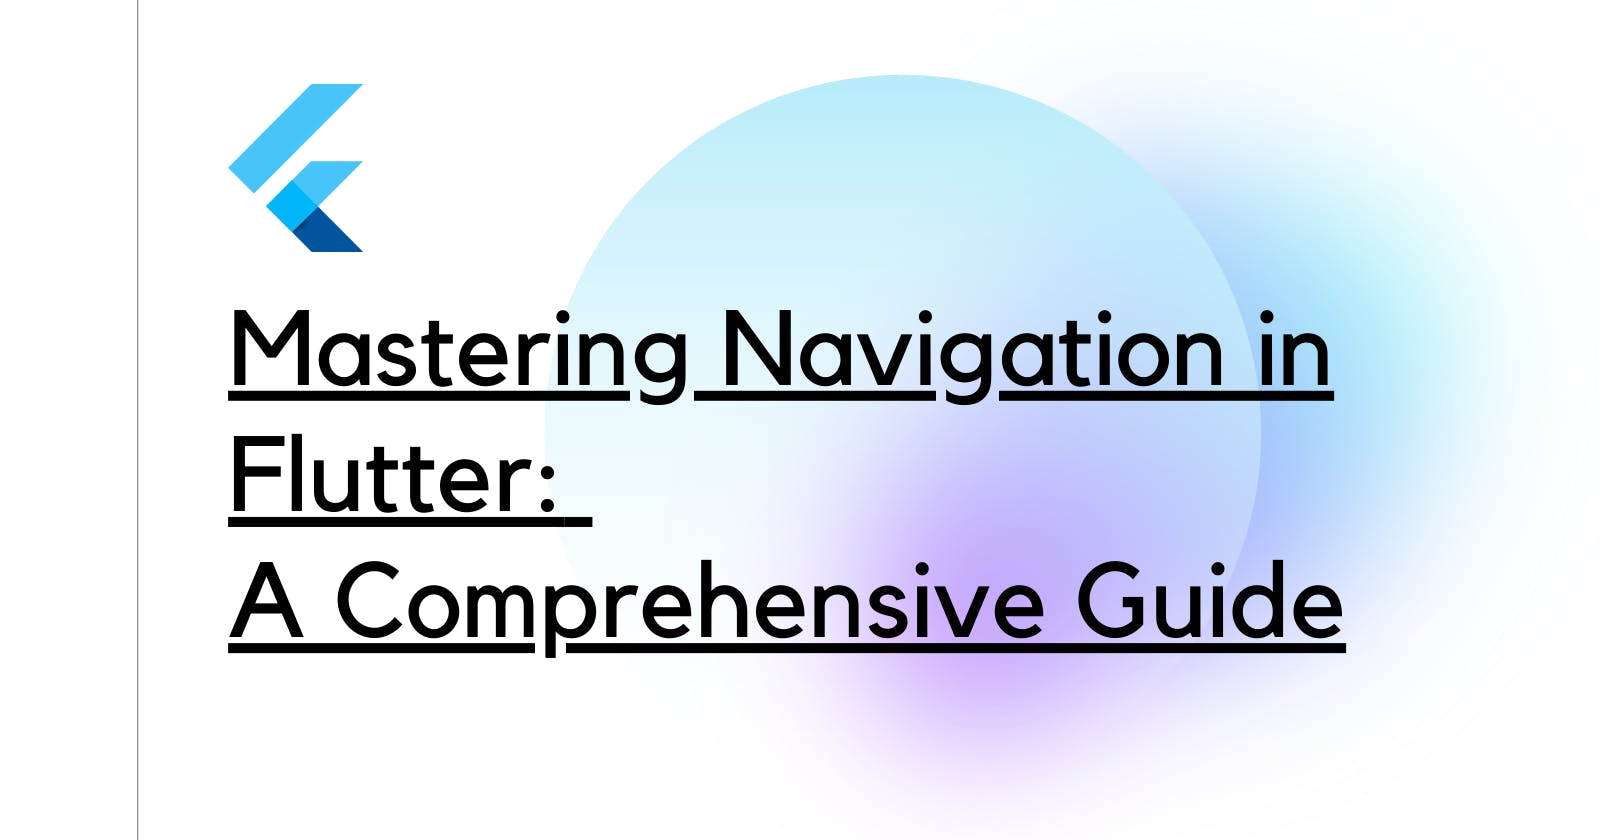 Mastering Navigation in Flutter: A Comprehensive Guide